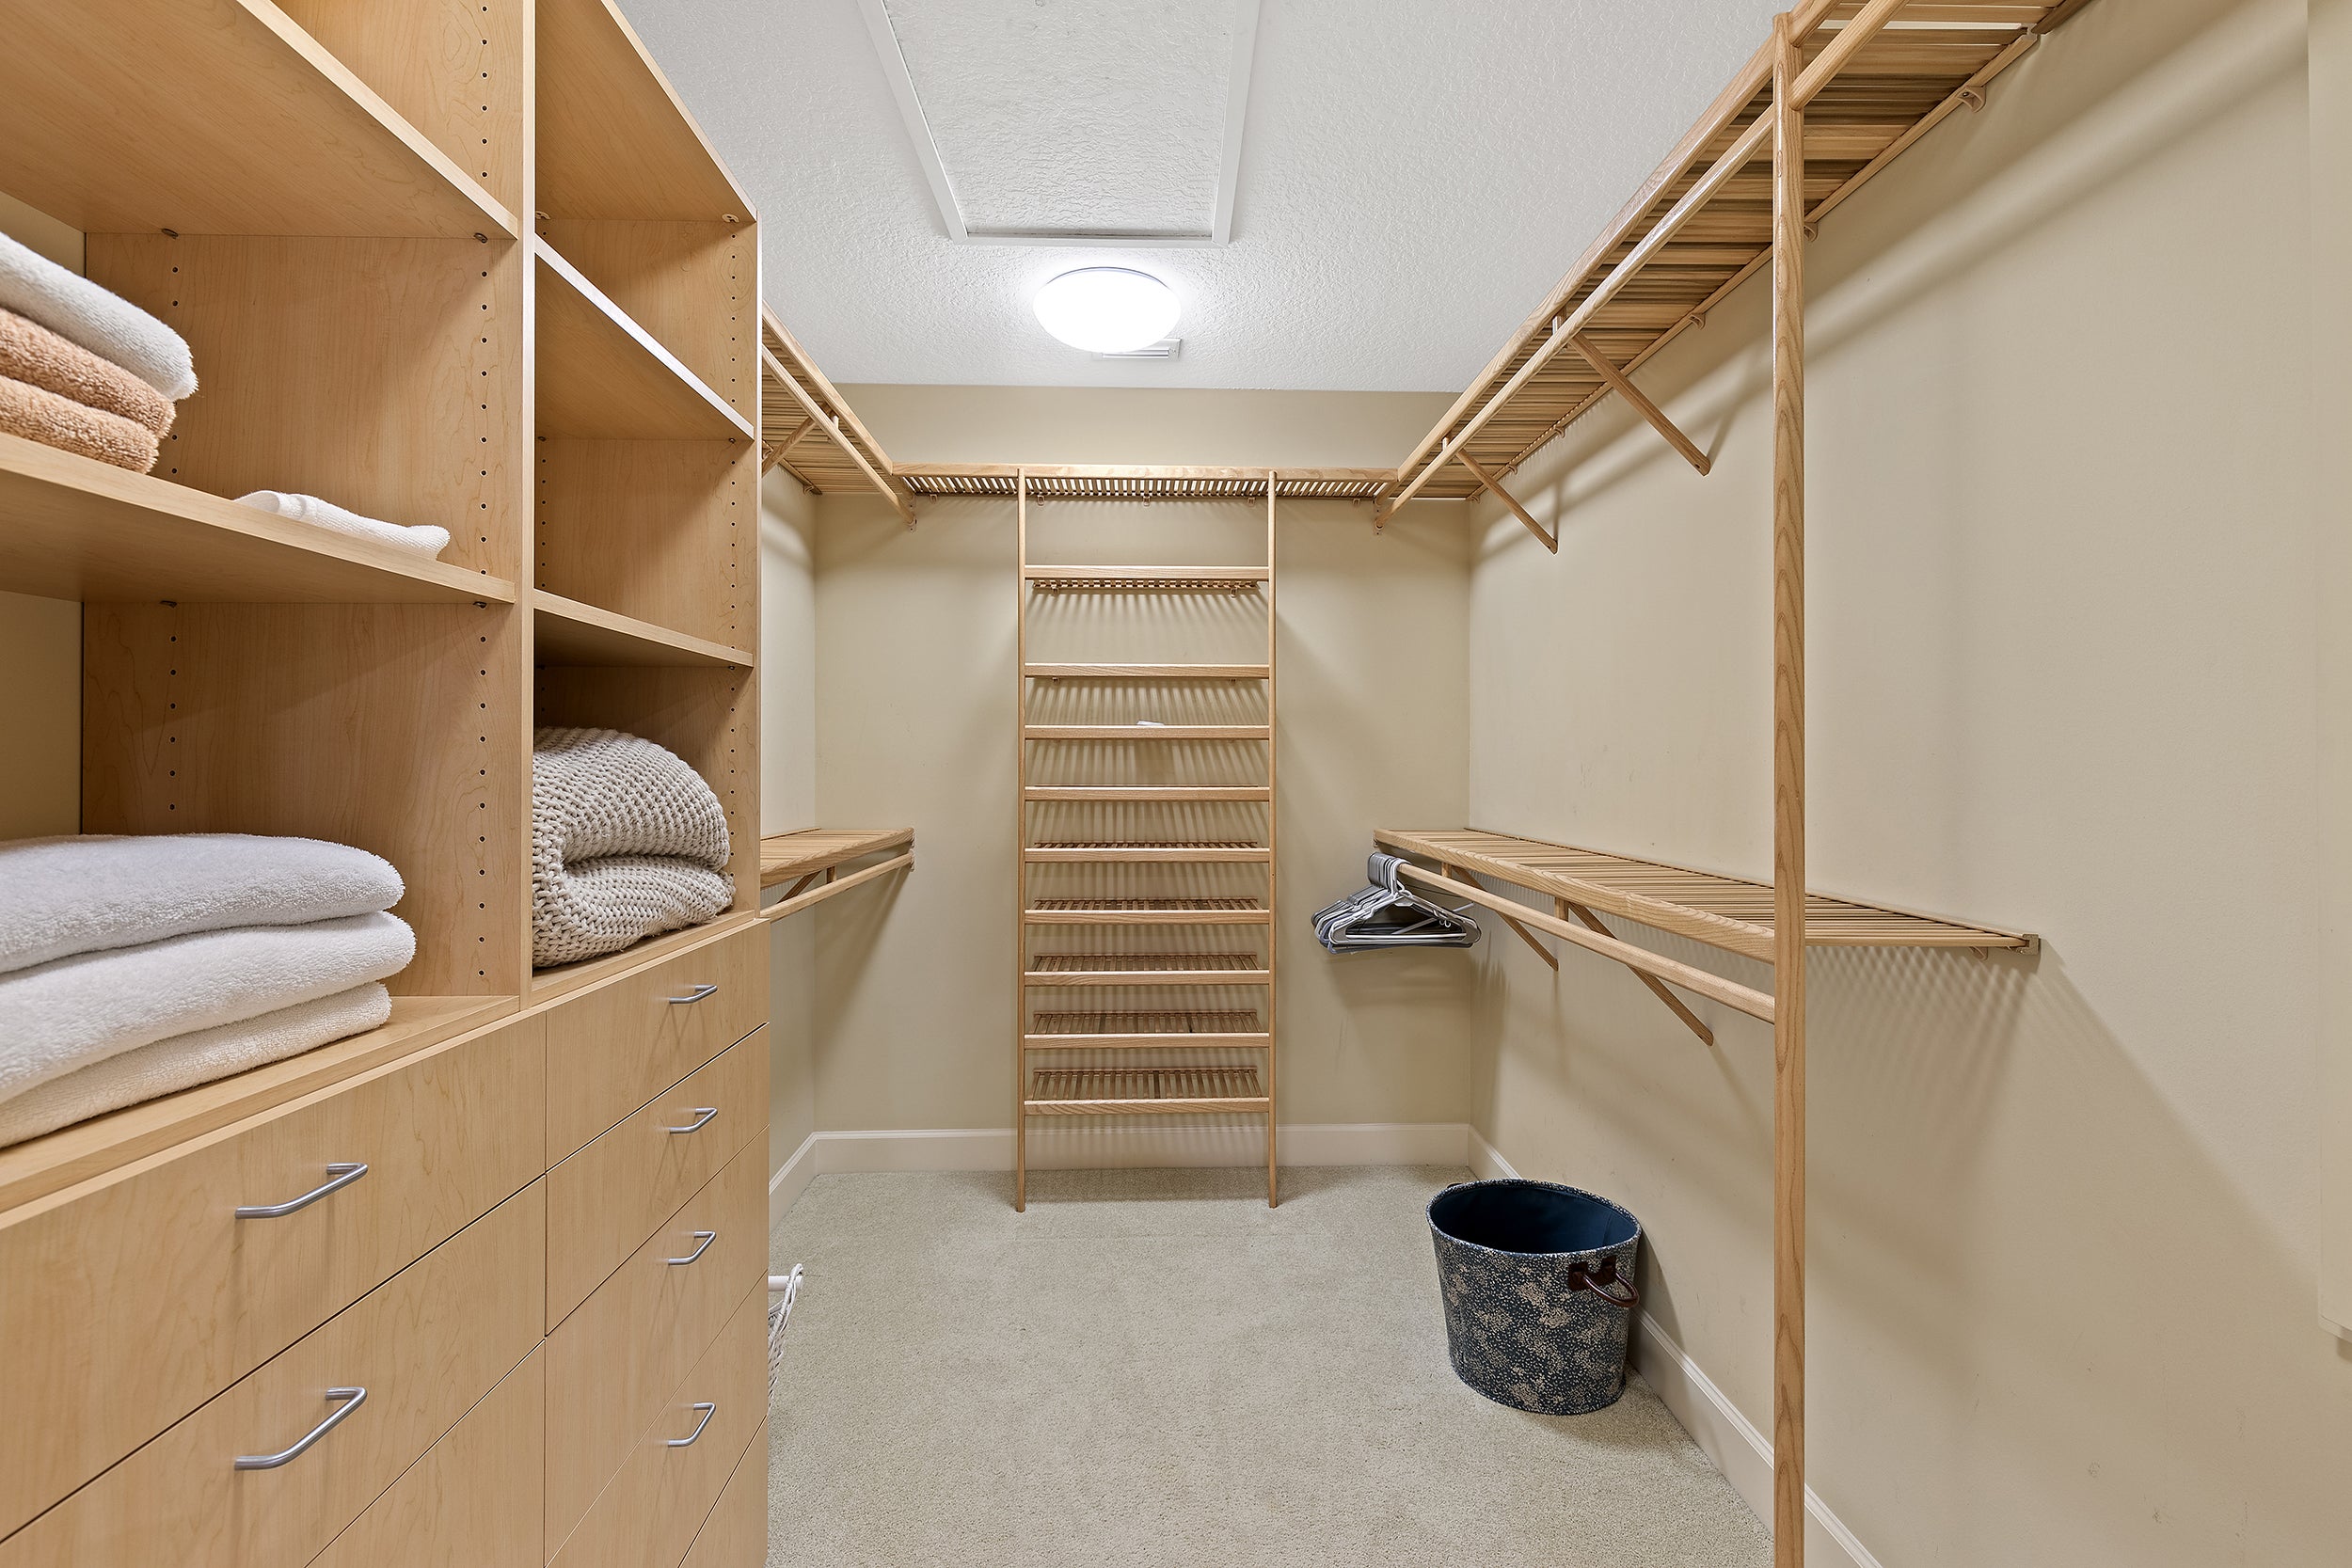 Huge closet in primary bedroom with plenty of storage